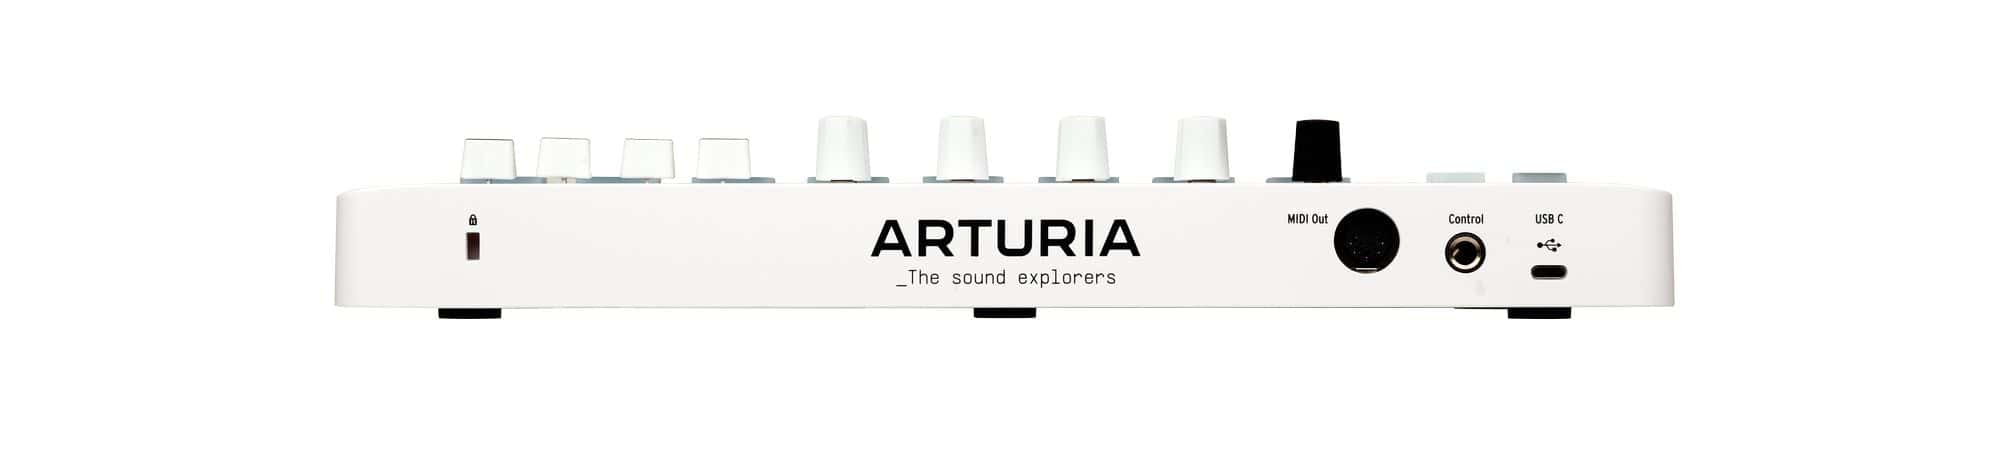 Arturia MiniLab MK 3 Portable 25-Key MIDI Controller, White